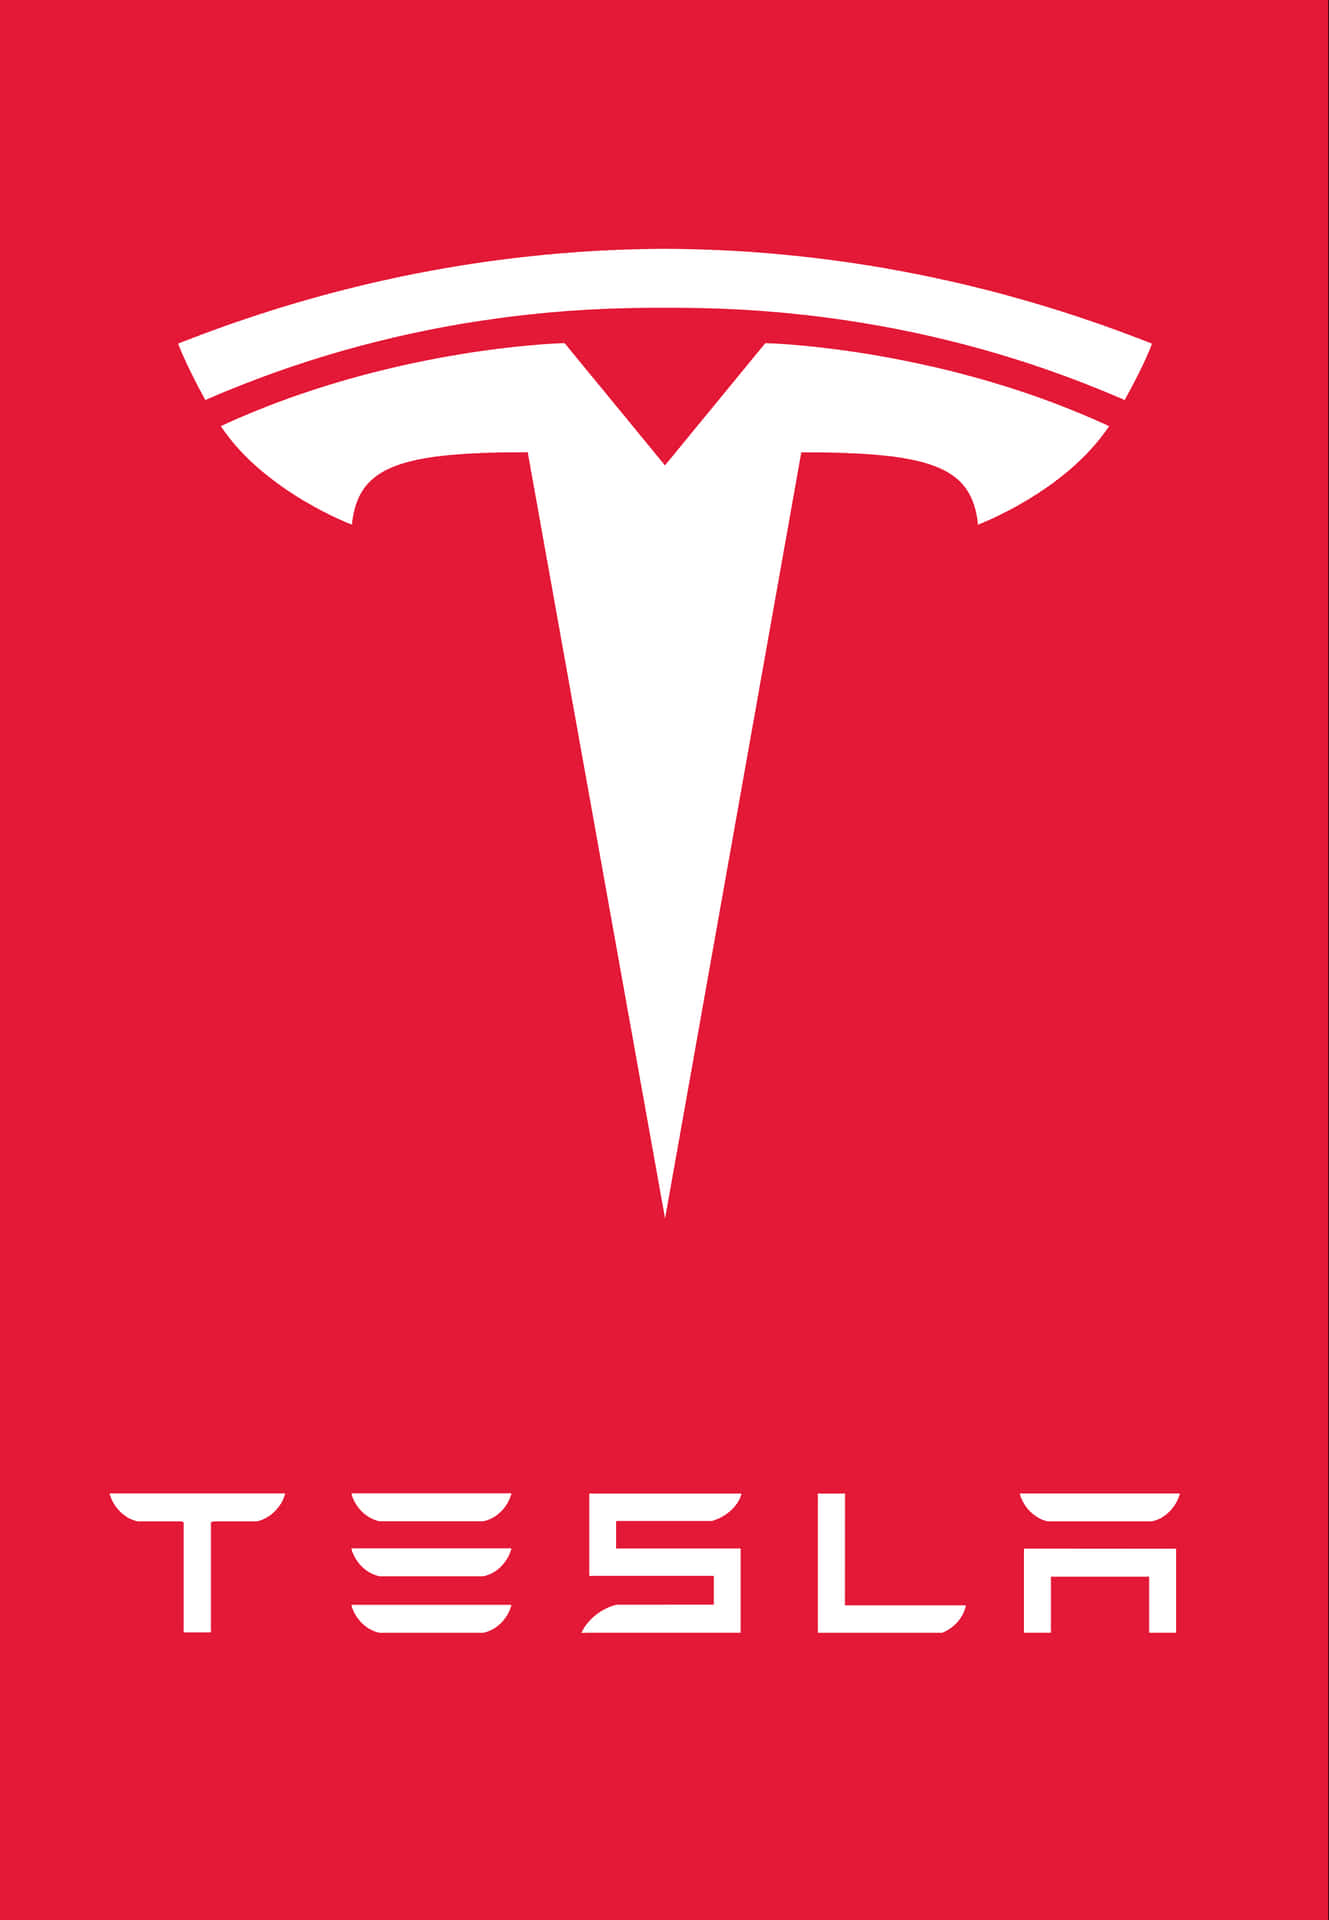 Teslalogo In 4k Wallpaper